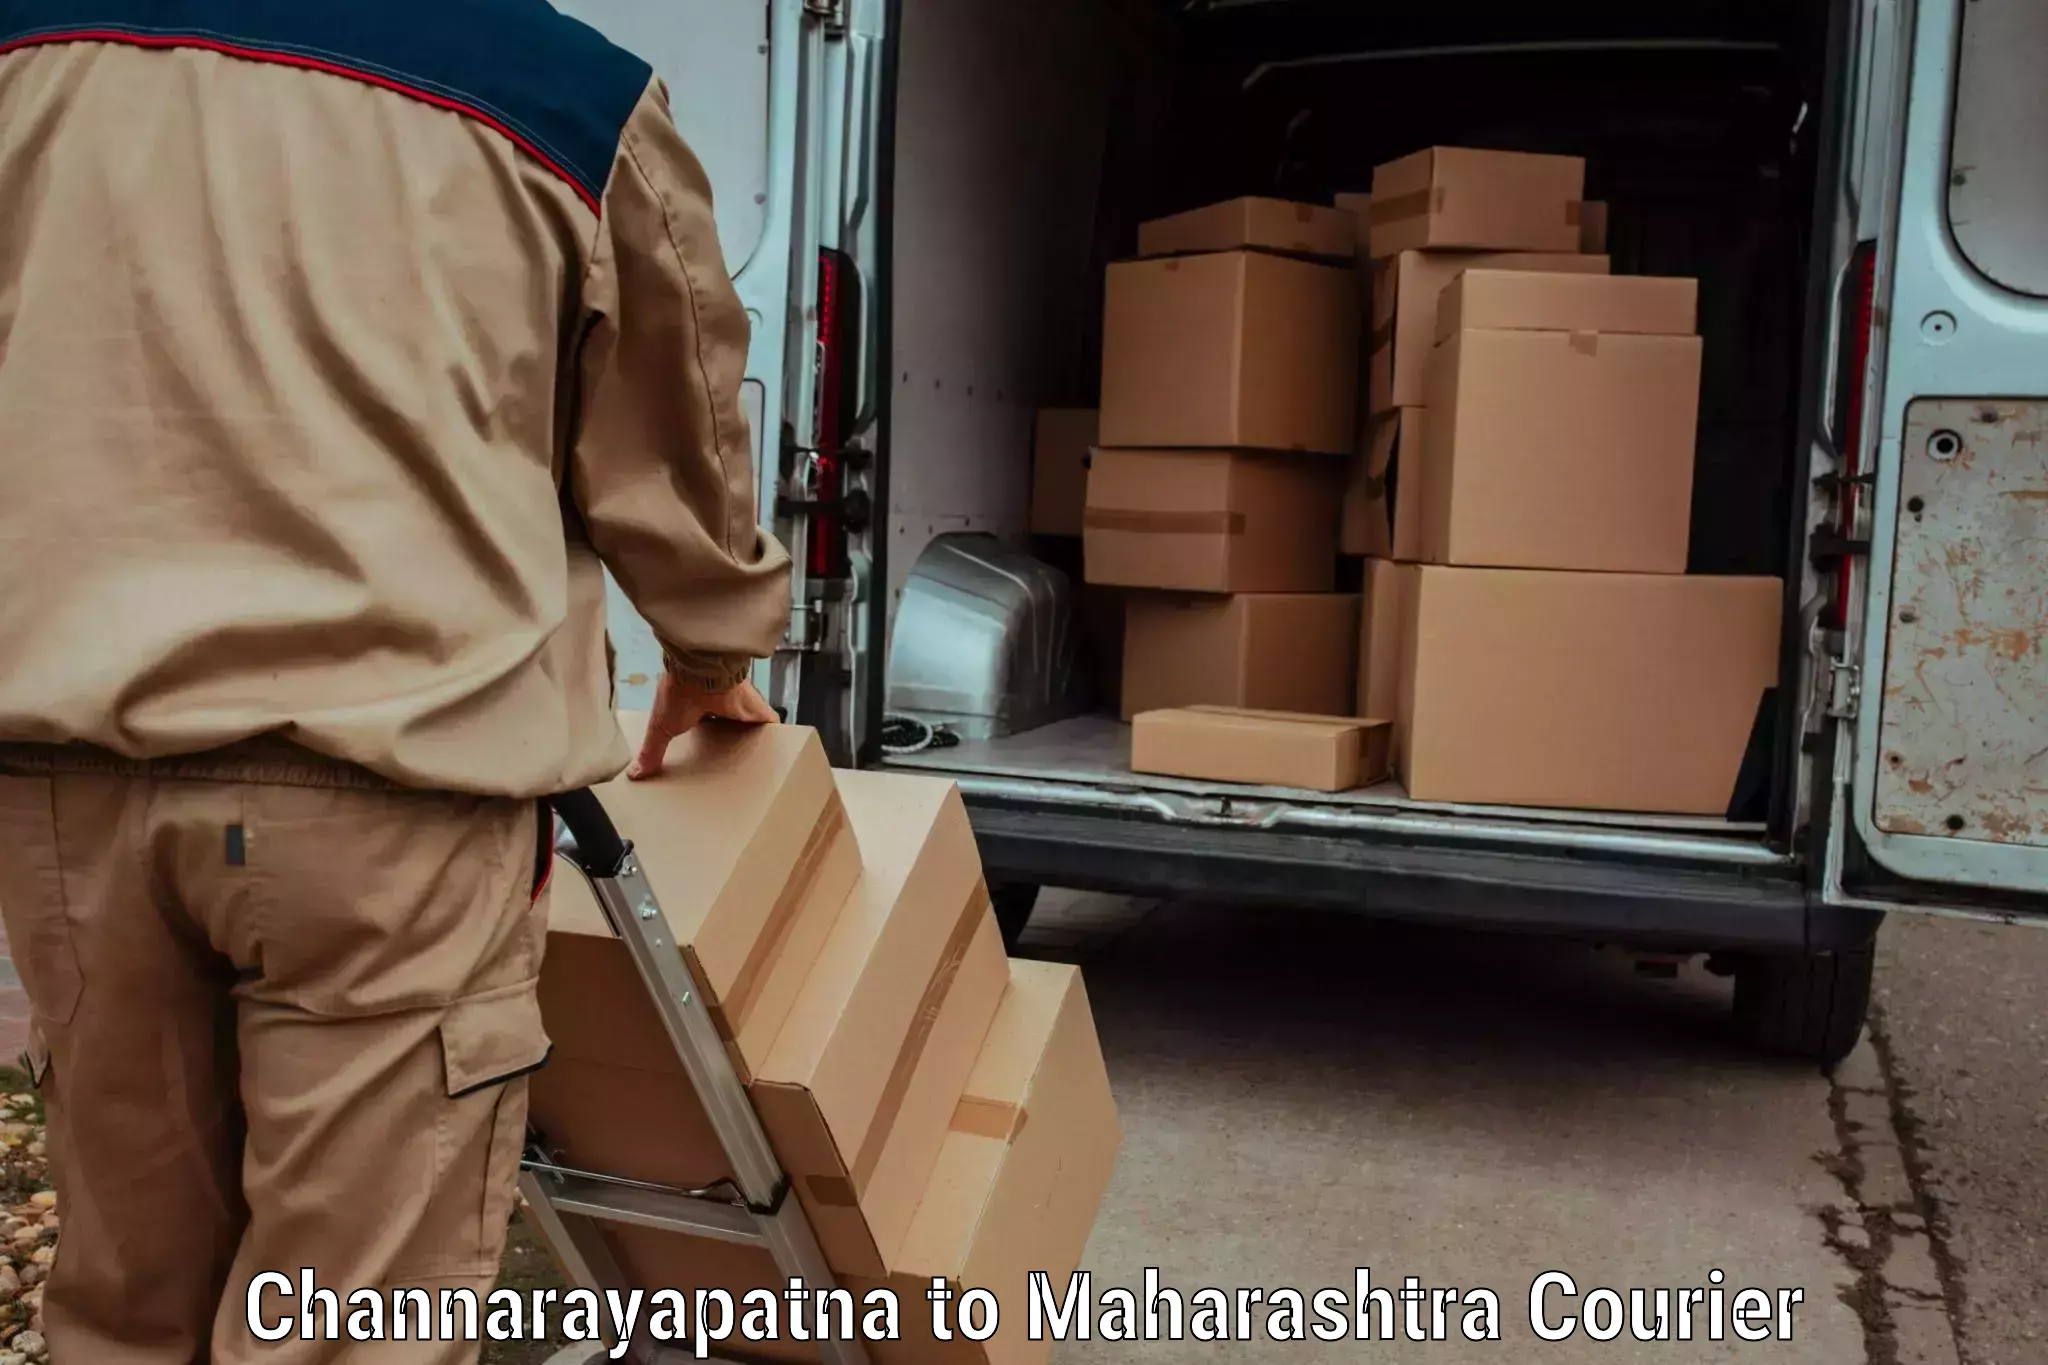 Courier service comparison in Channarayapatna to Ghatanji